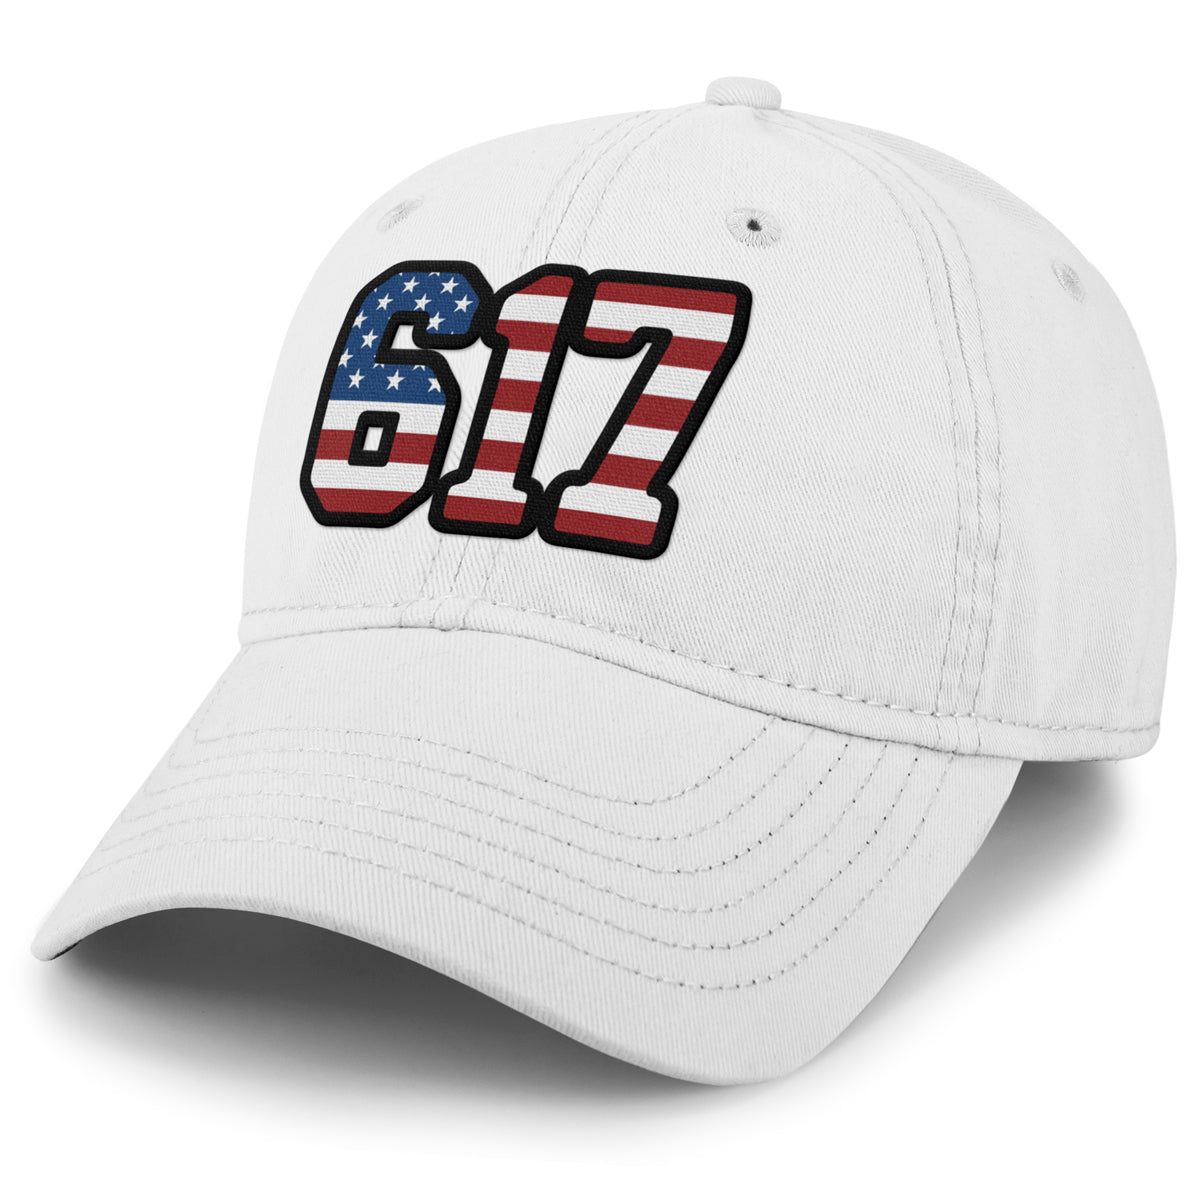 Boston 617 Stars & Stripes Dad Hat - Chowdaheadz